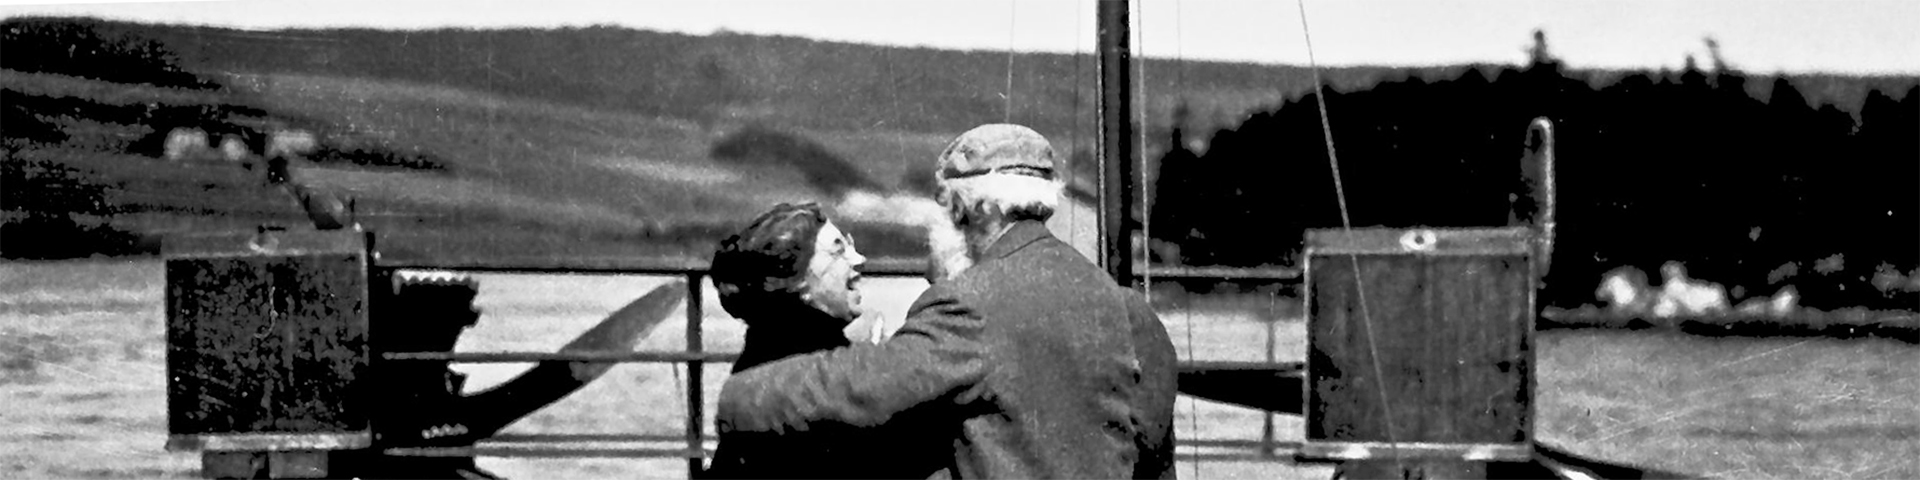 Photo historique de Mabel souriant à Alexander Graham Bell alors que les deux se trouvent sur un quai, le dos tourné à la caméra. 